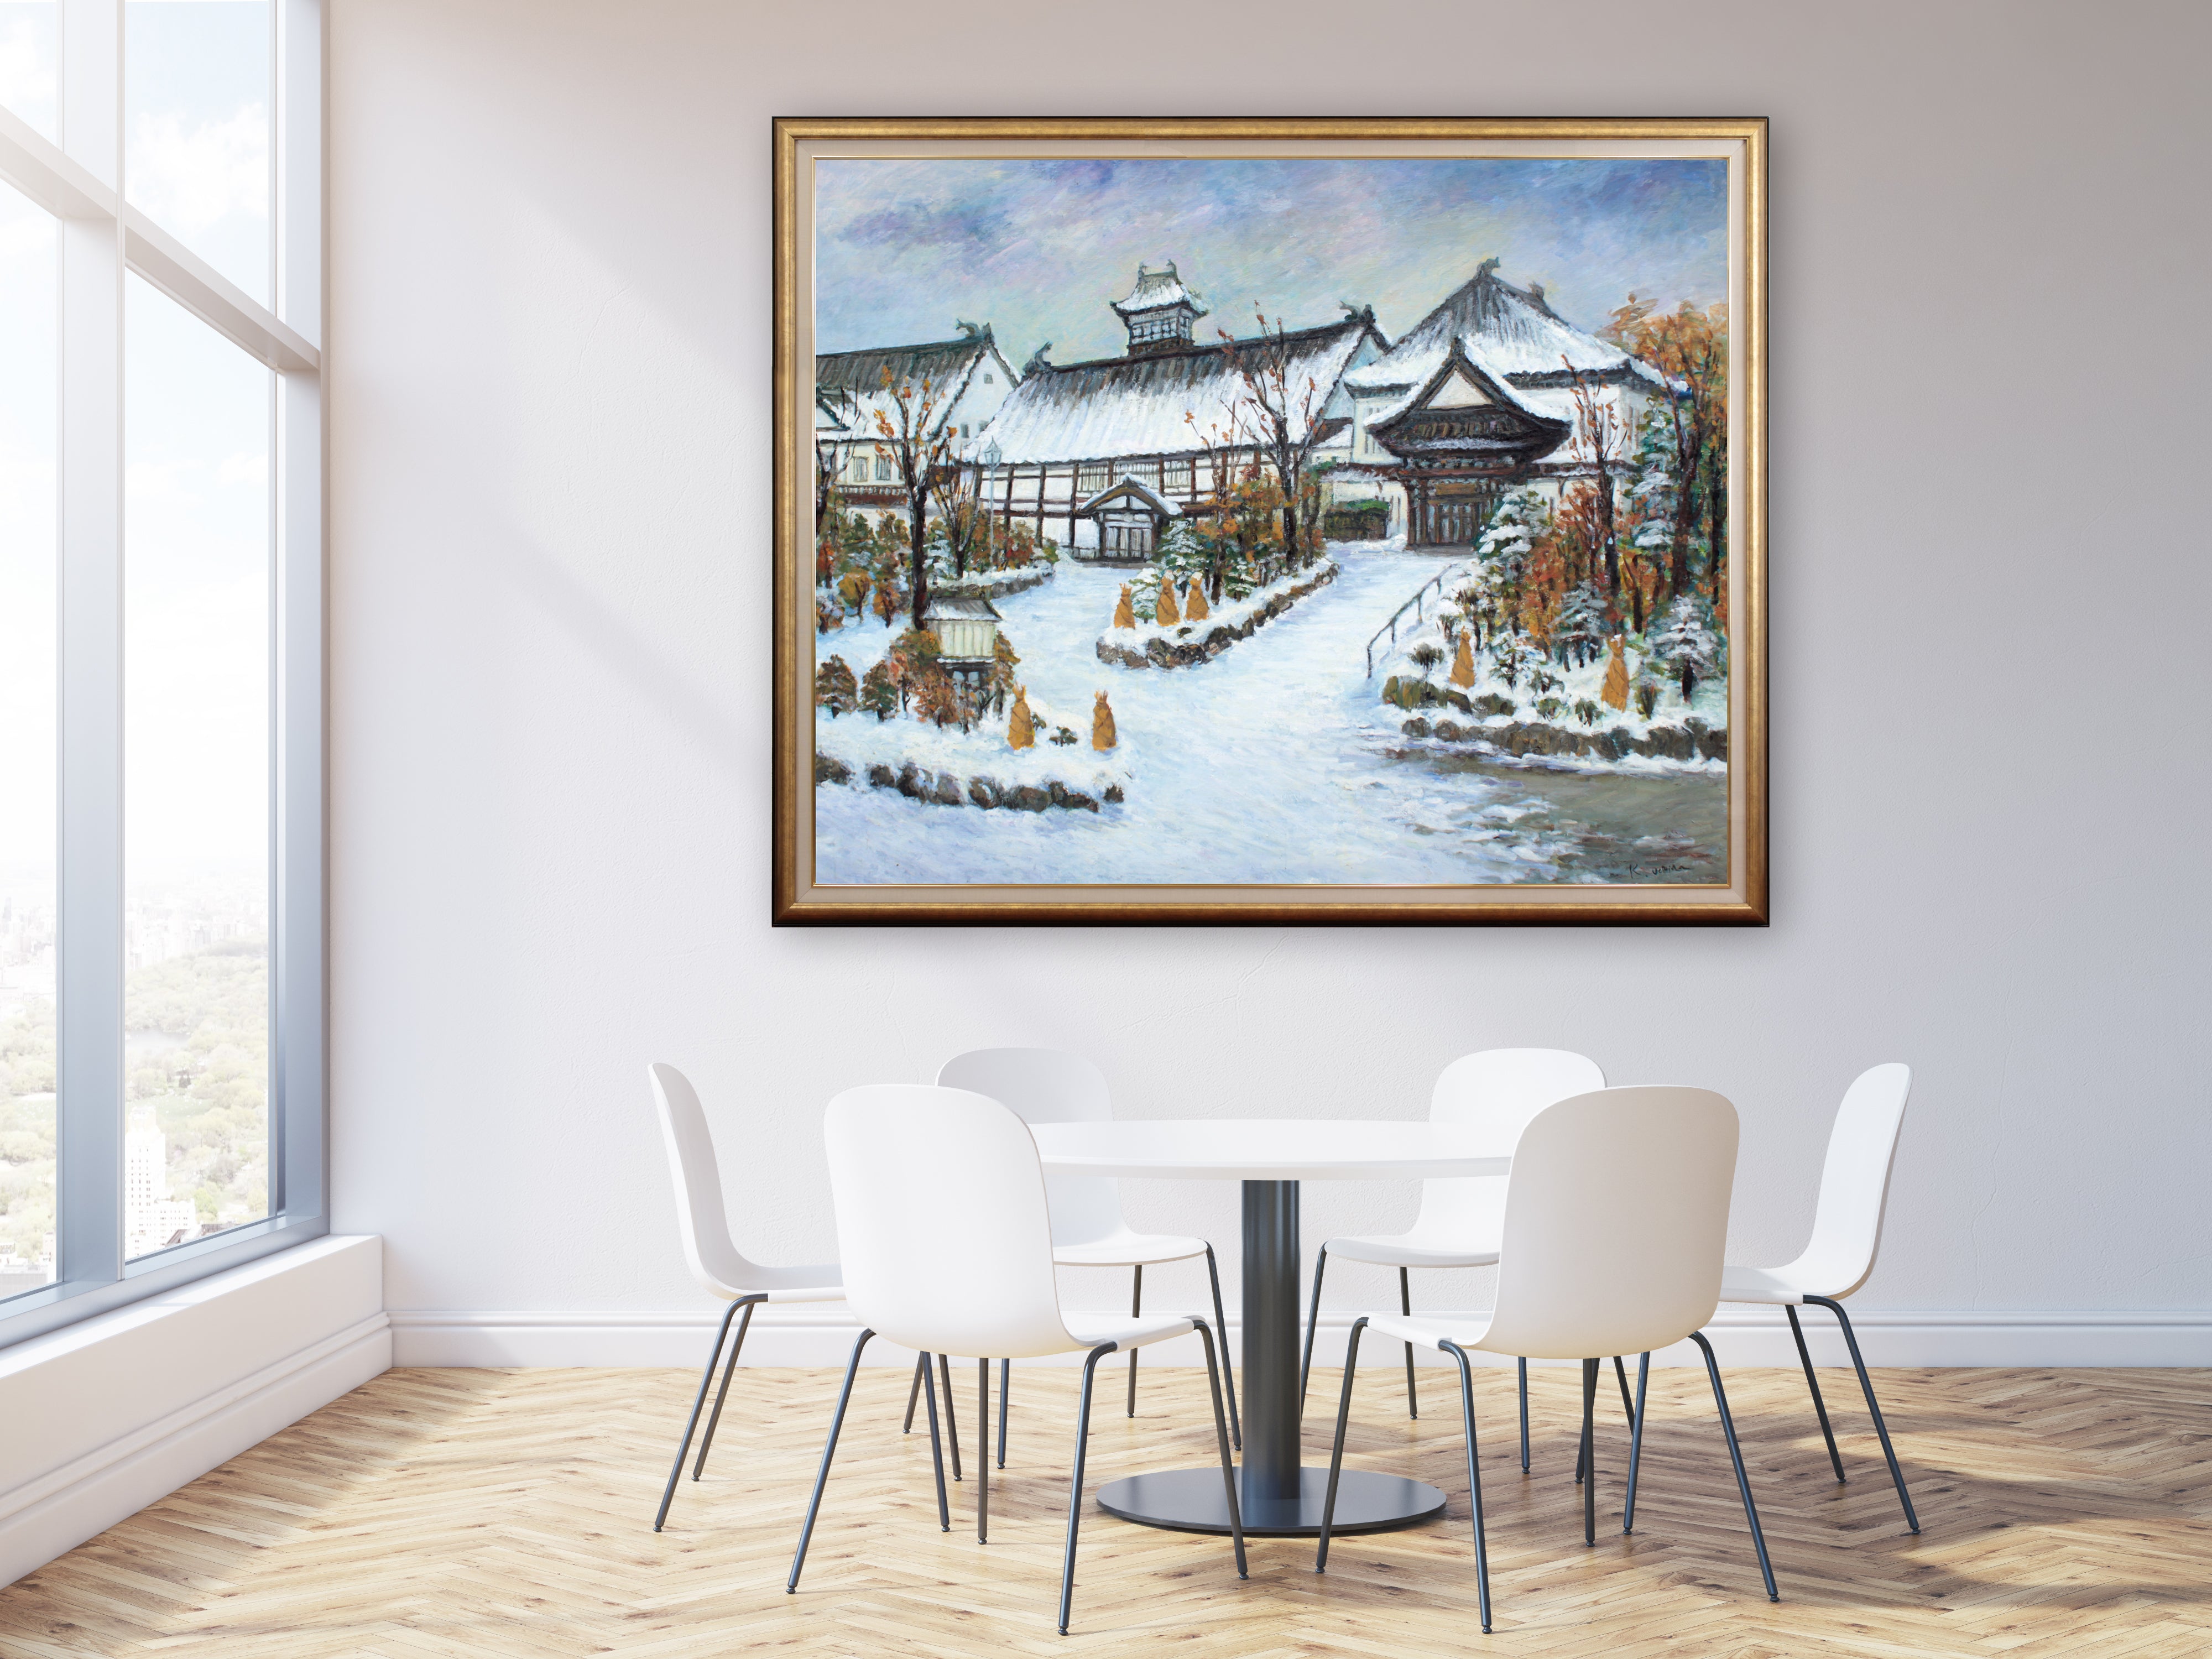 内田かをる 『平磯の鰊御殿』 油彩画 - 北海道画廊